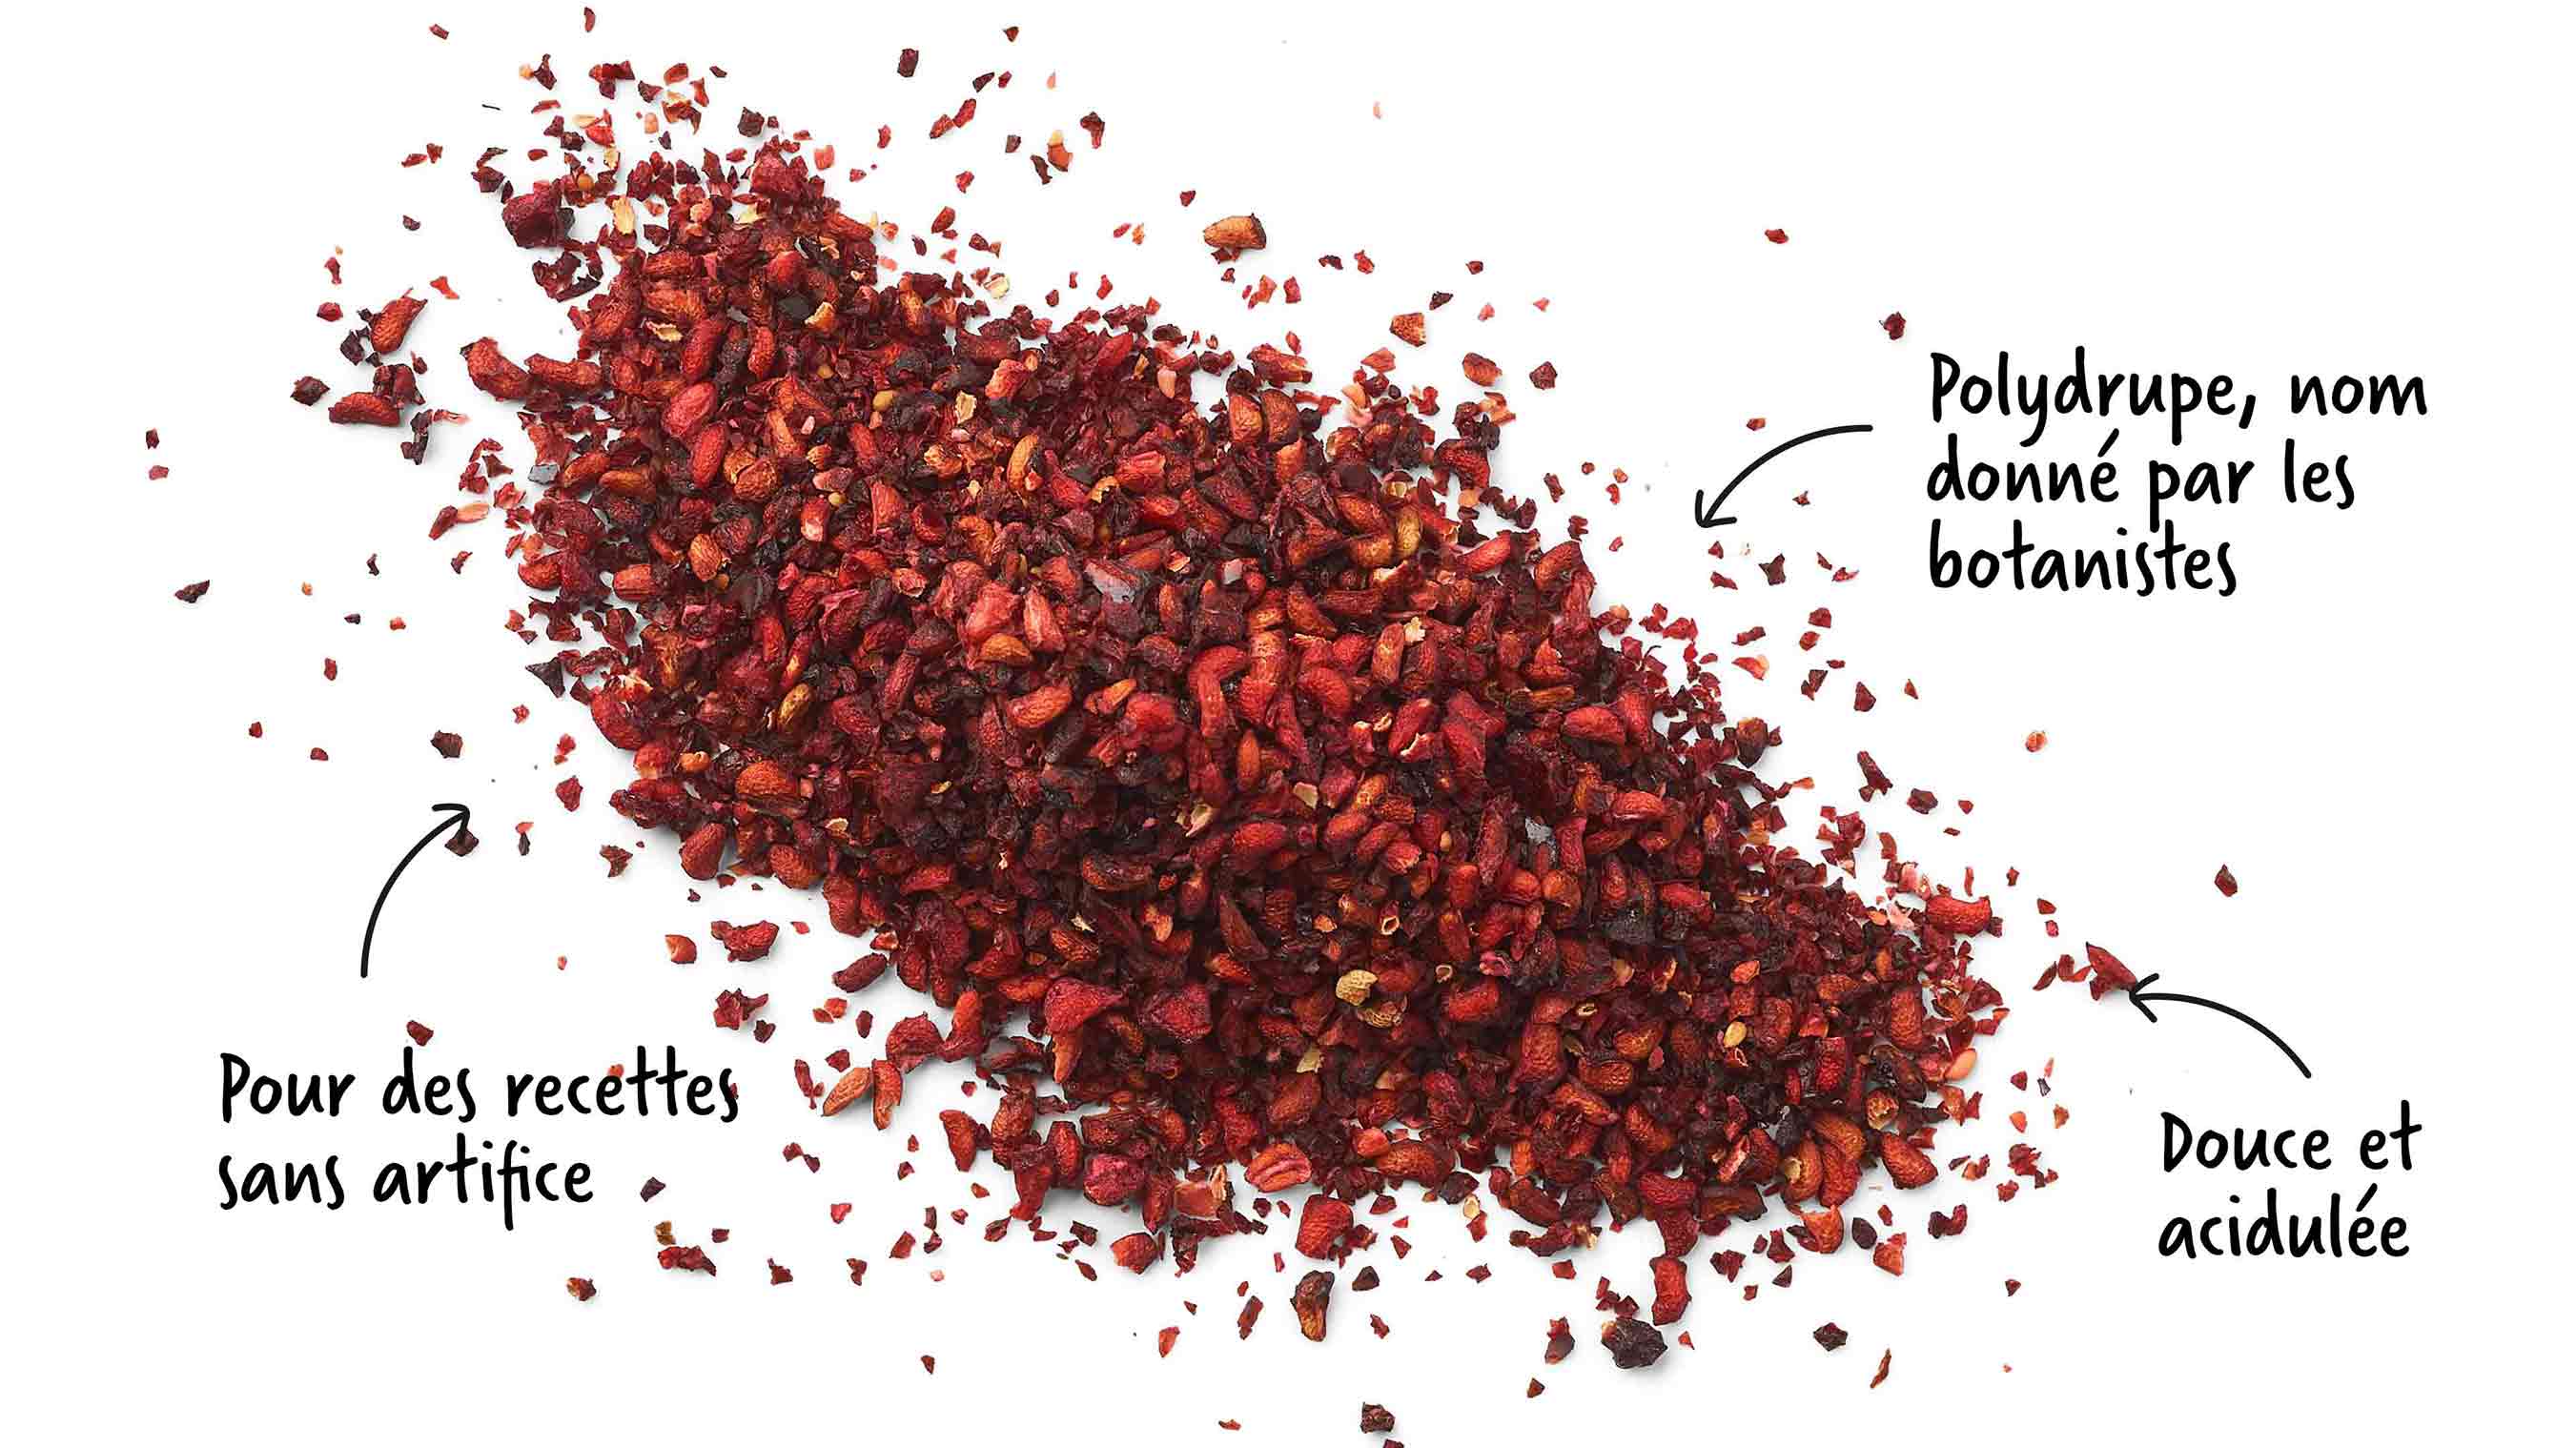 Dried raspberry is very tasty in herbal teas